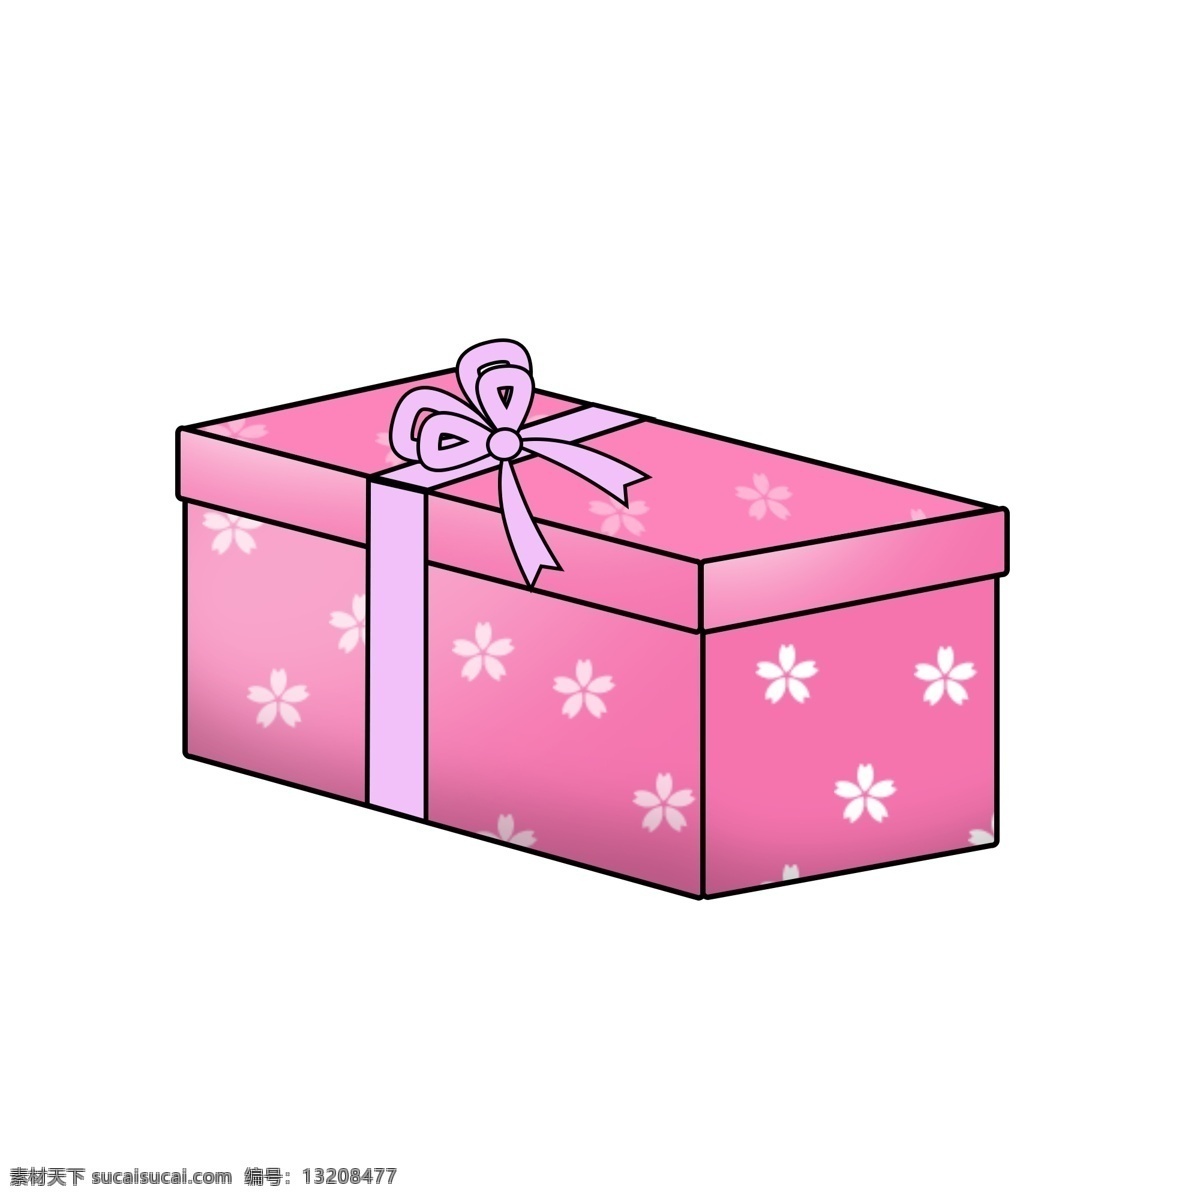 表白 日 可爱 礼物 盒 手绘 卡通 装饰 表白日 礼物盒 盒子 粉色